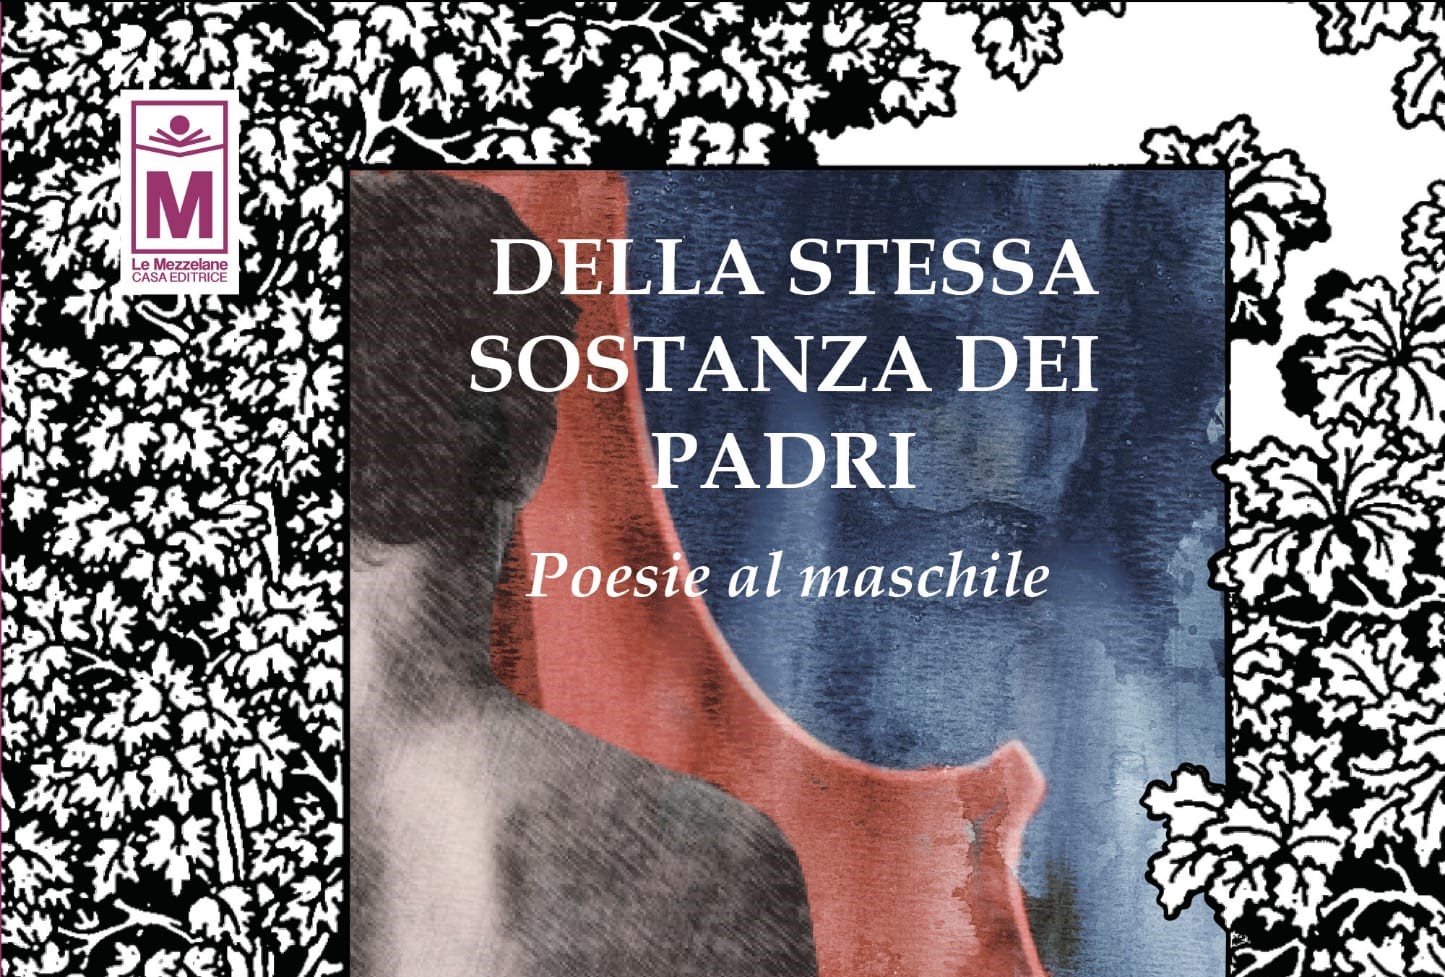 Le poesie al maschile di Davide Rocco Colacrai: l'intervista all'autore